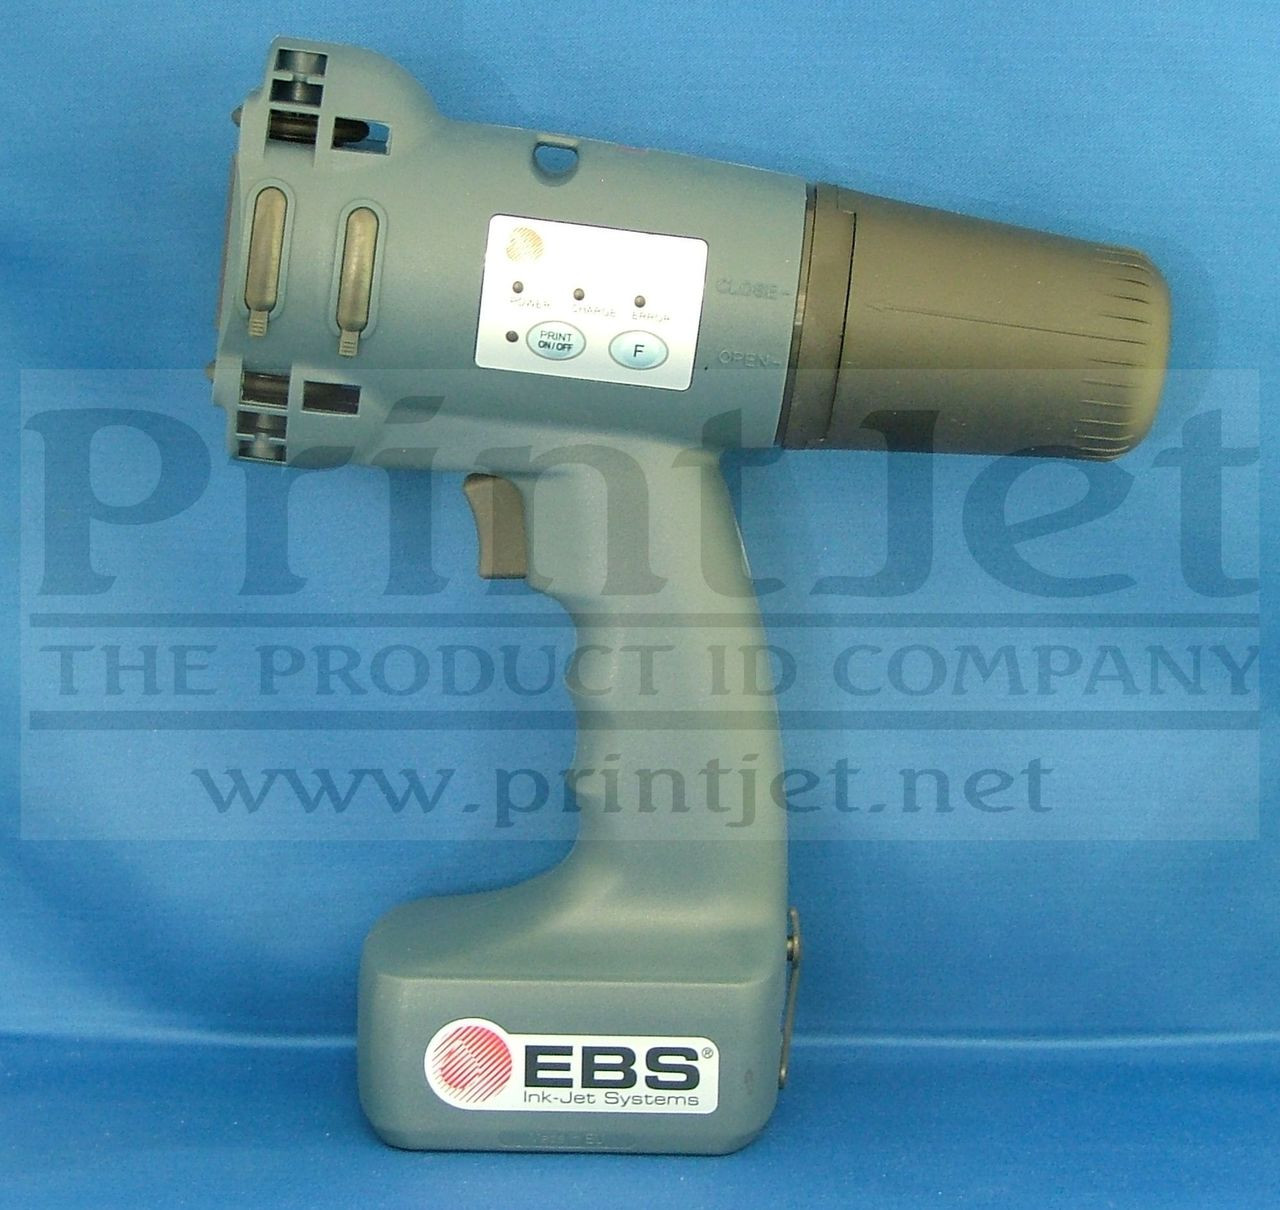 P129100 Handjet EBS-250C - PrintJet USA | PrintJet USA